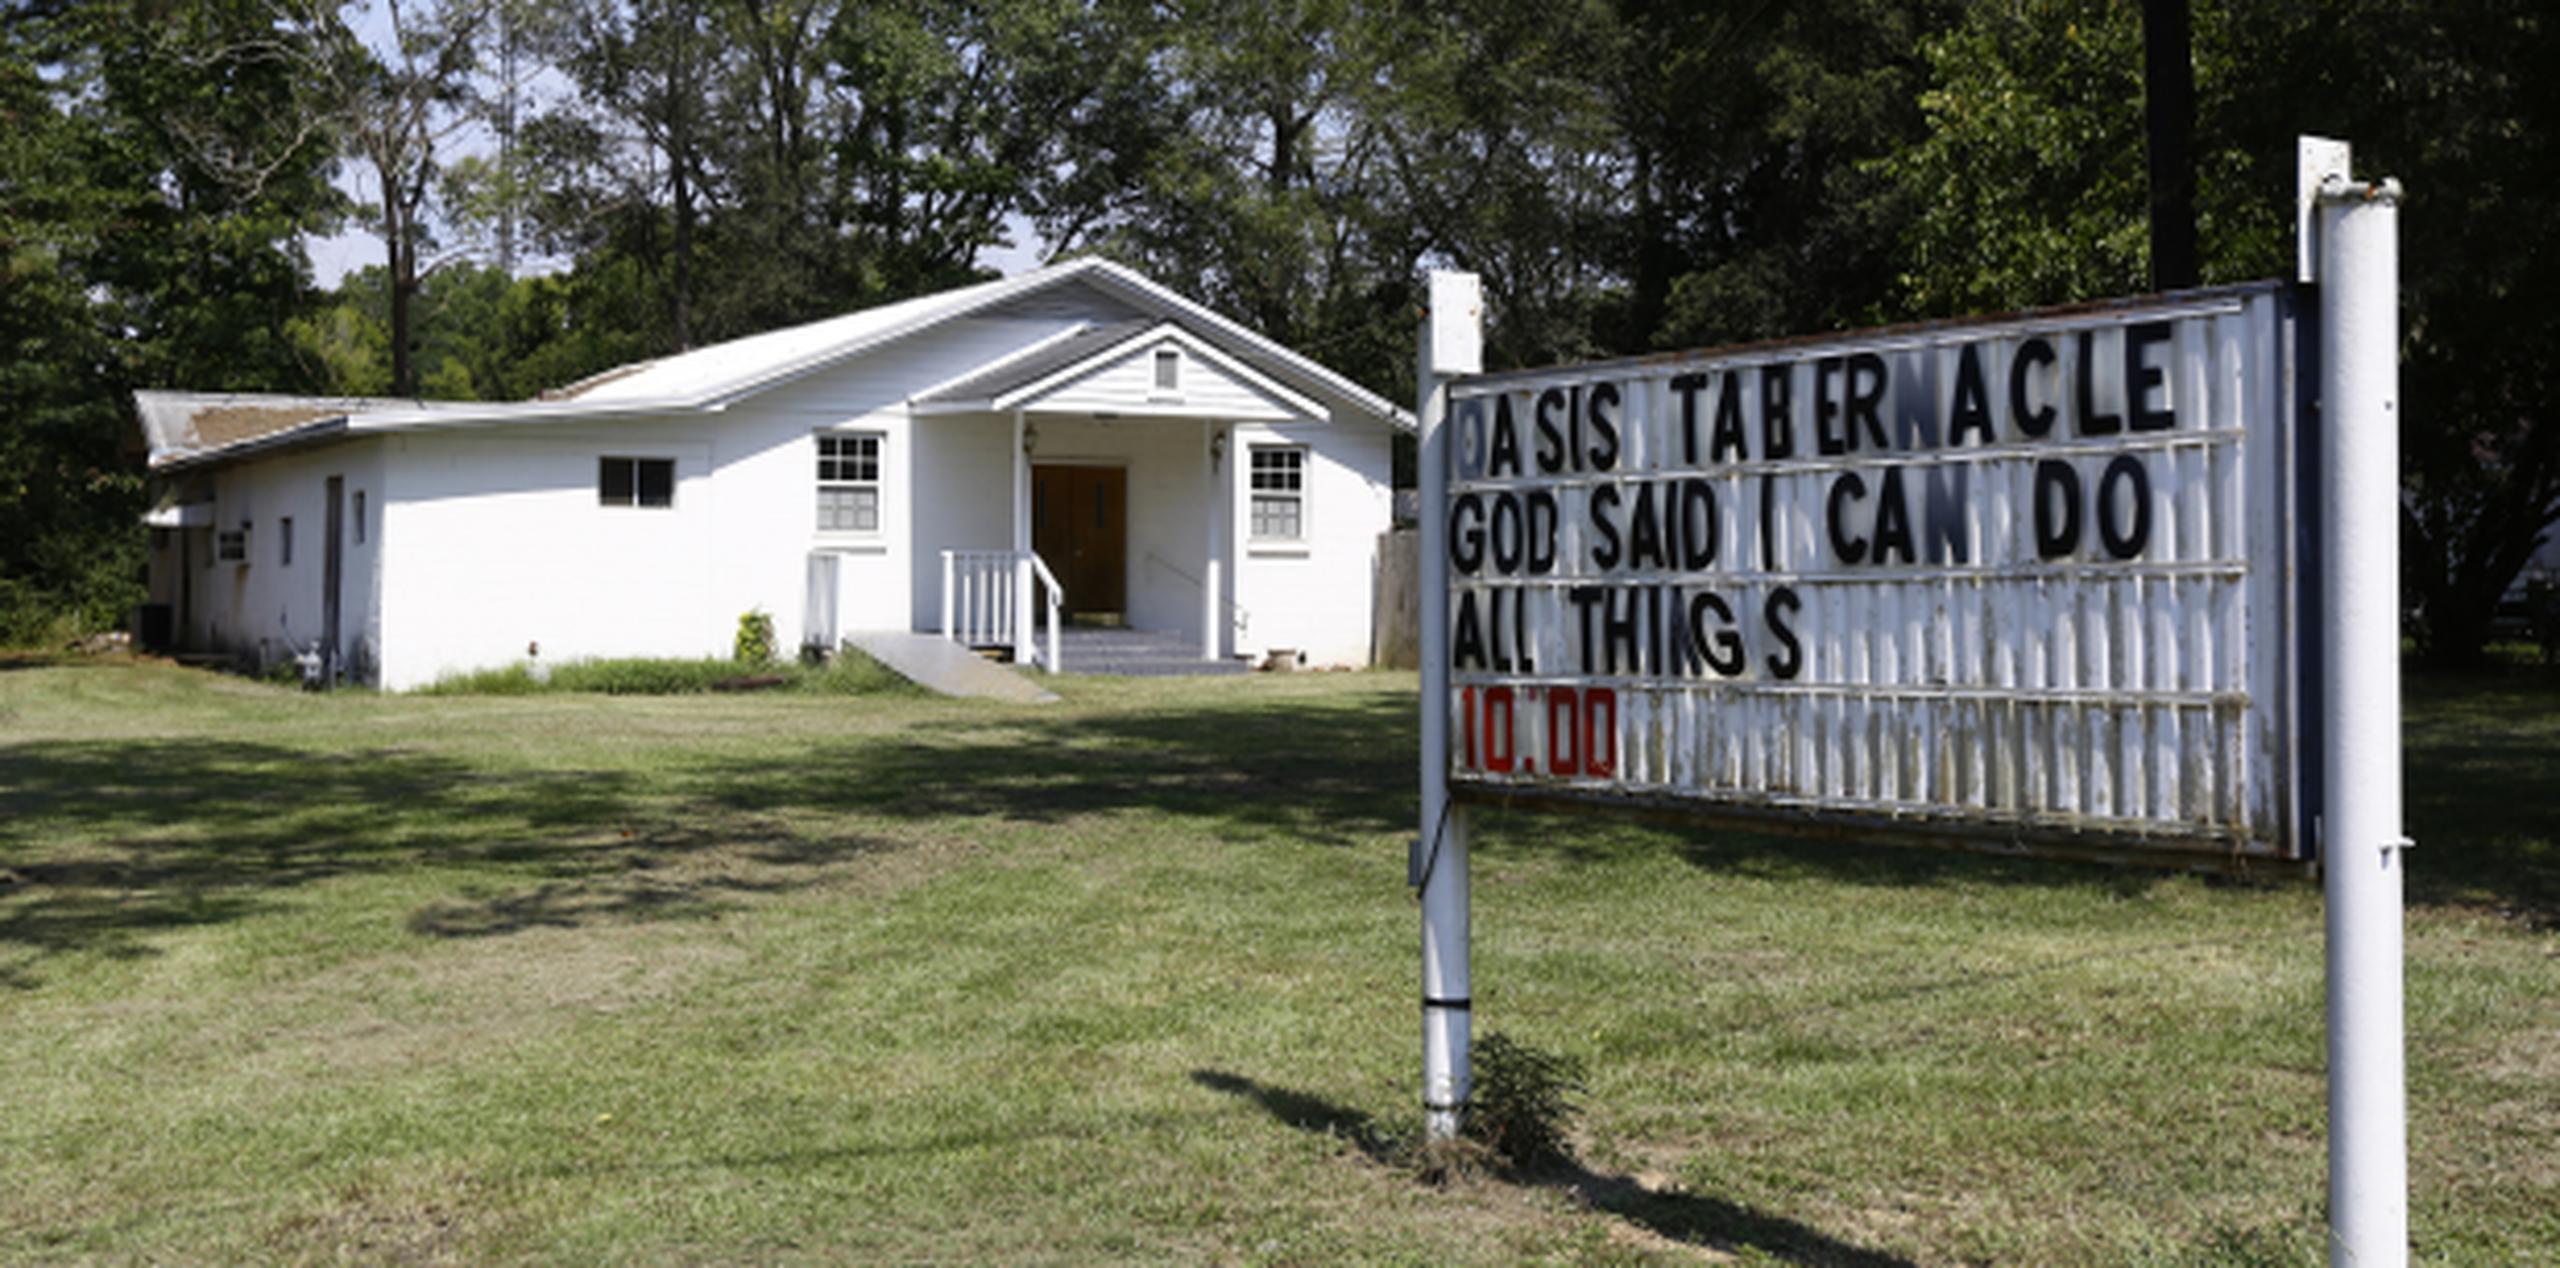 El incidente ocurrió durante un servicio religioso en la iglesia Oasis Tabernáculo en el este de Selma. (AP)